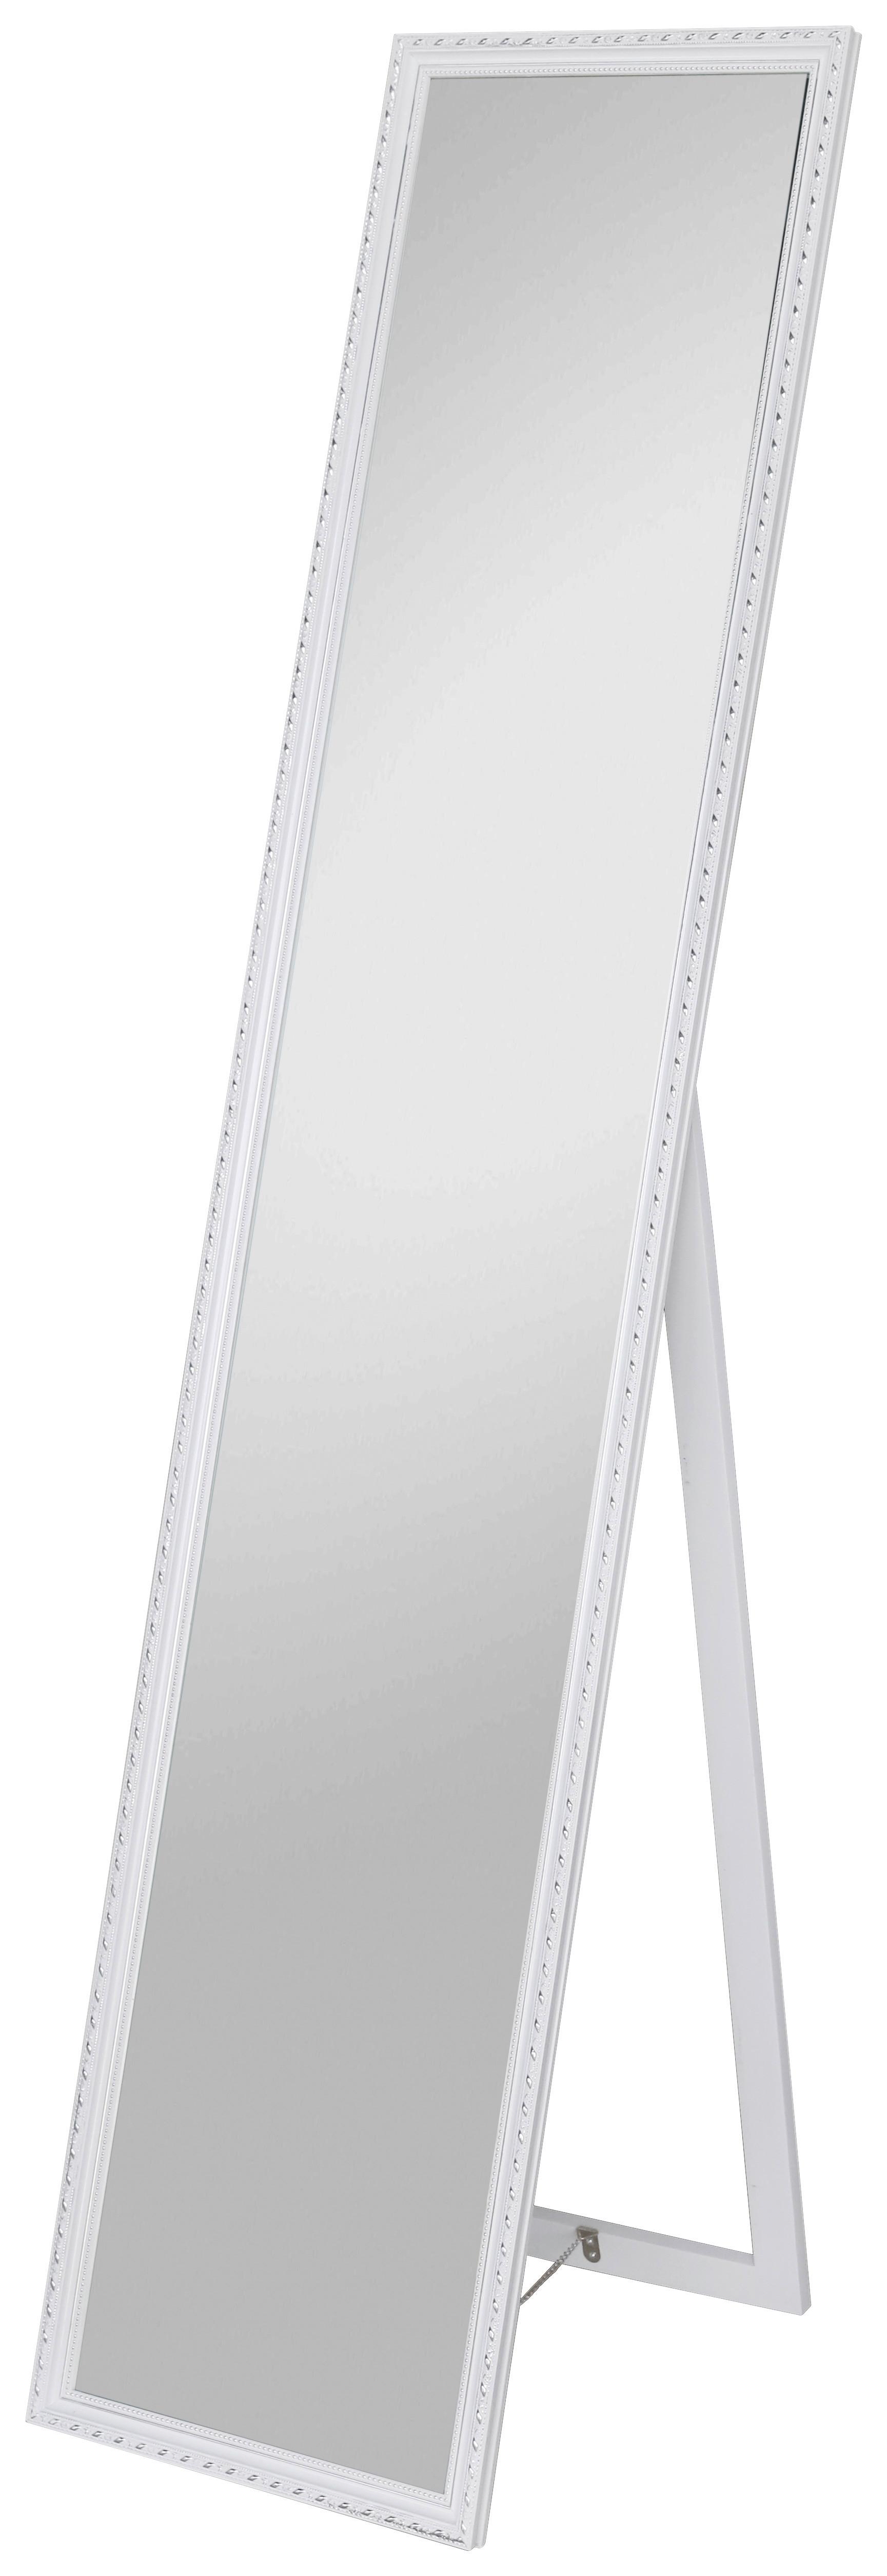 Standspiegel Pisa BxH: 34x160 cm mit Holzrahmen Weiß - Silberfarben/Weiß, MODERN, Glas/Holz (34/160/2,3cm)